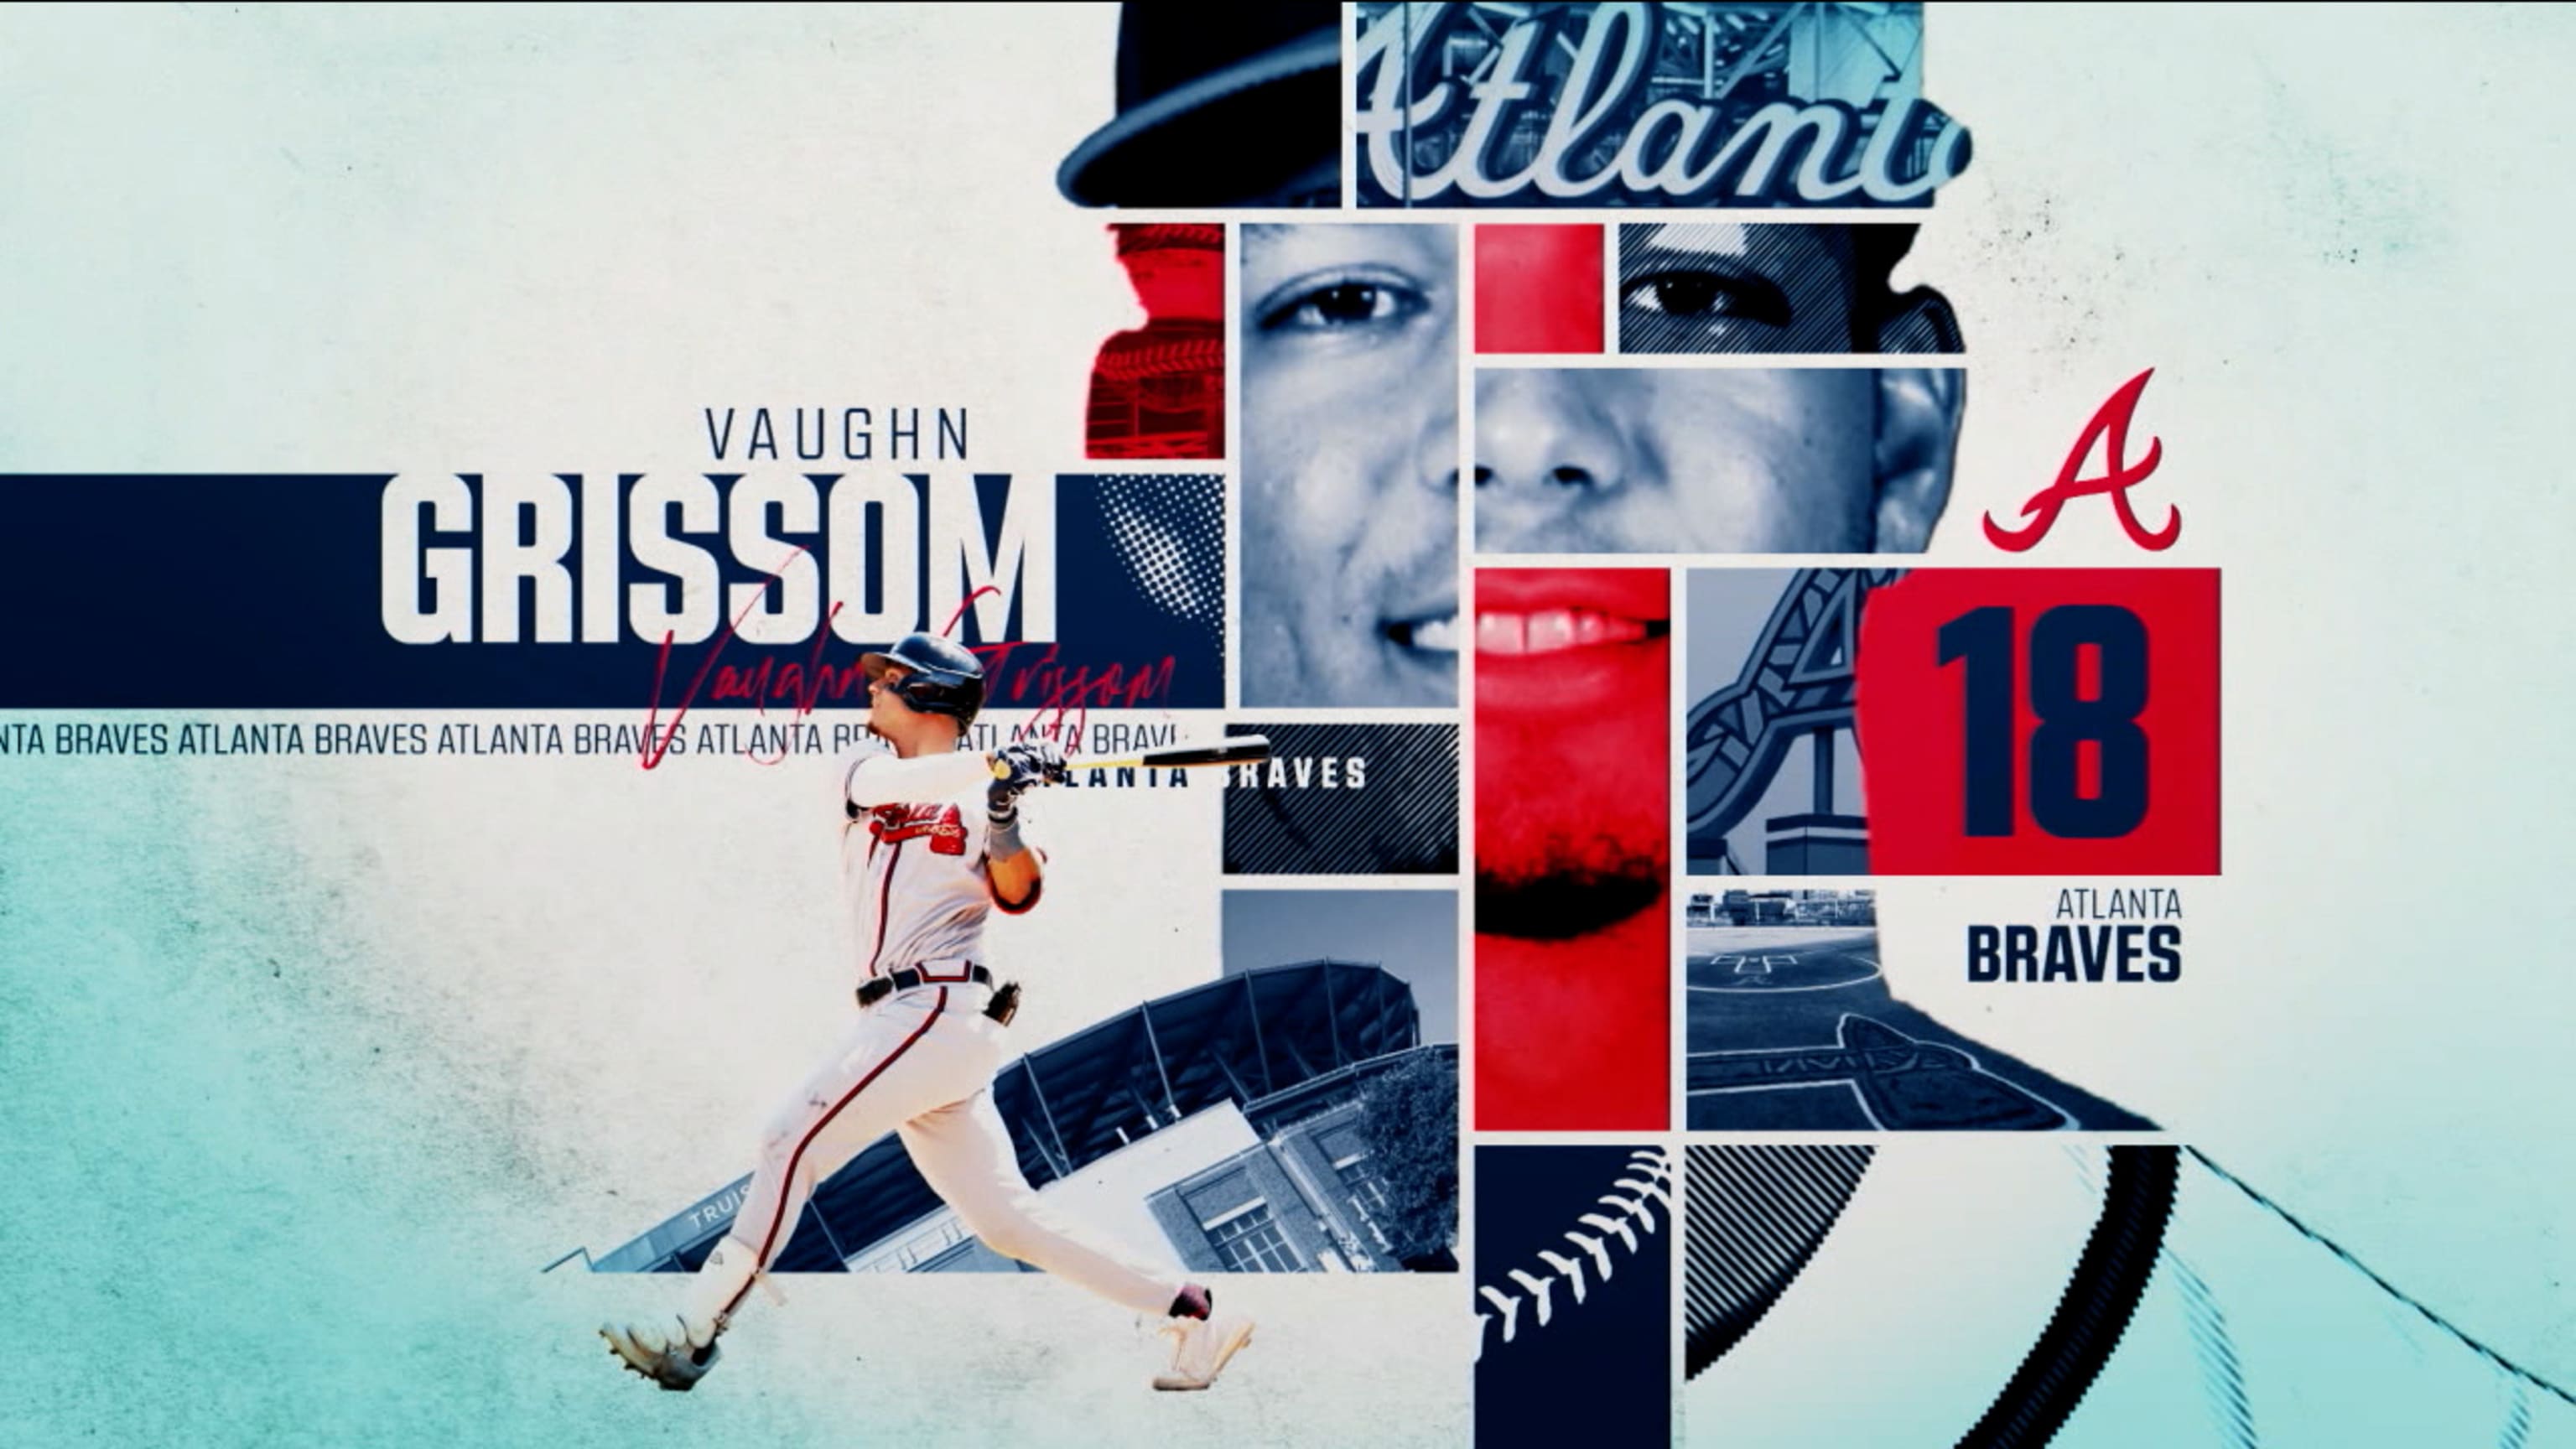 Vaughn Grissom - Atlanta Braves Shortstop - ESPN